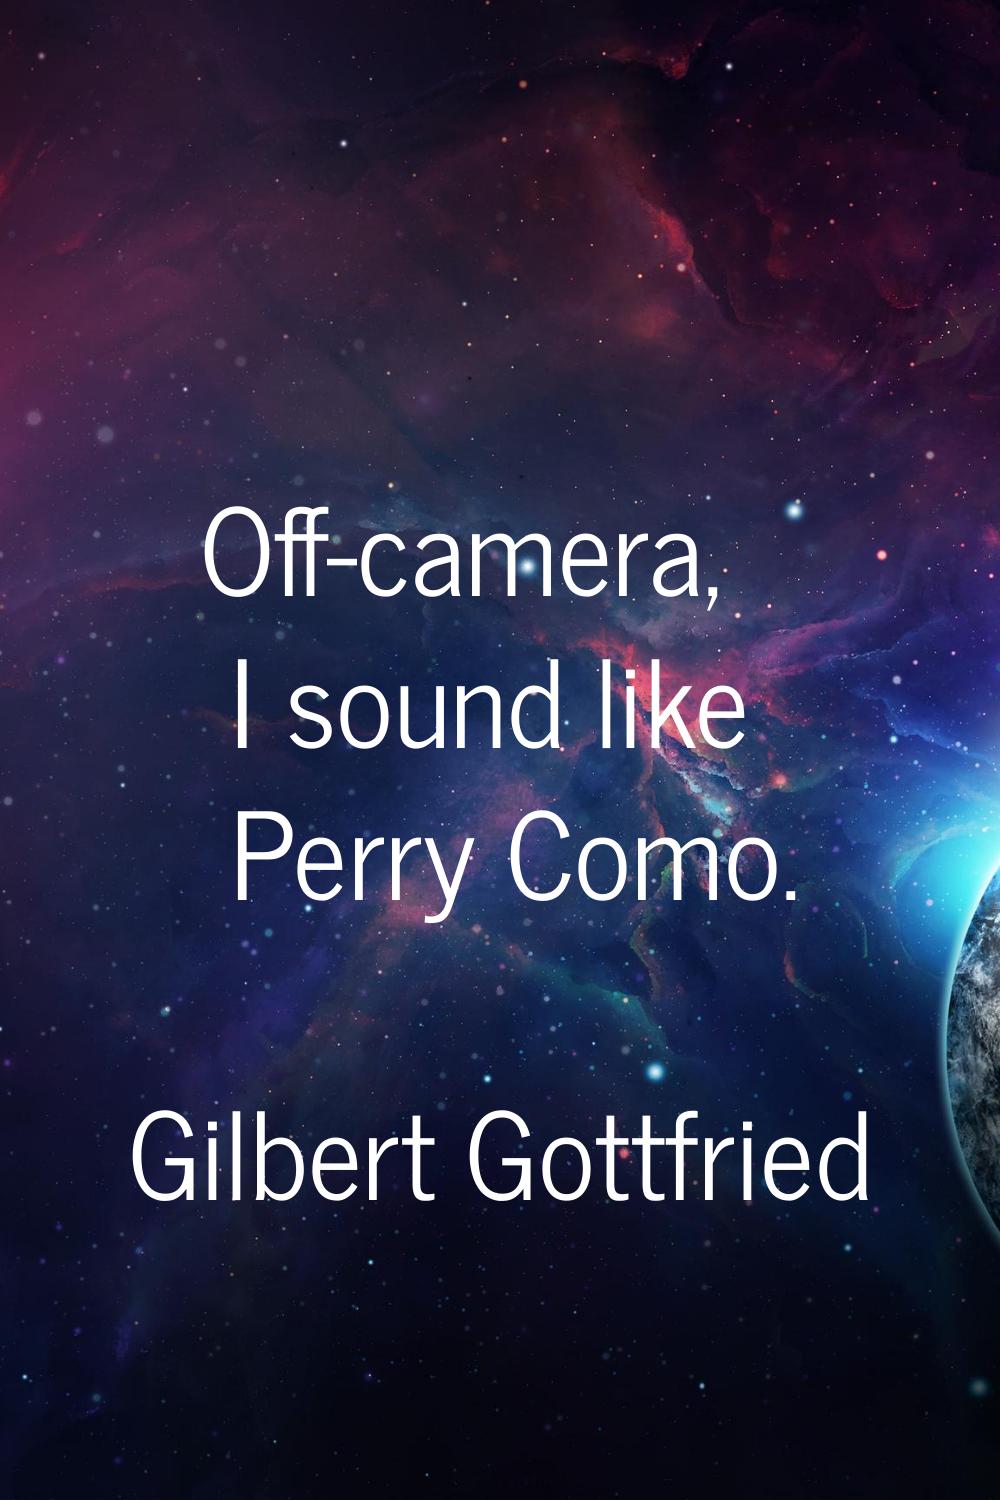 Off-camera, I sound like Perry Como.